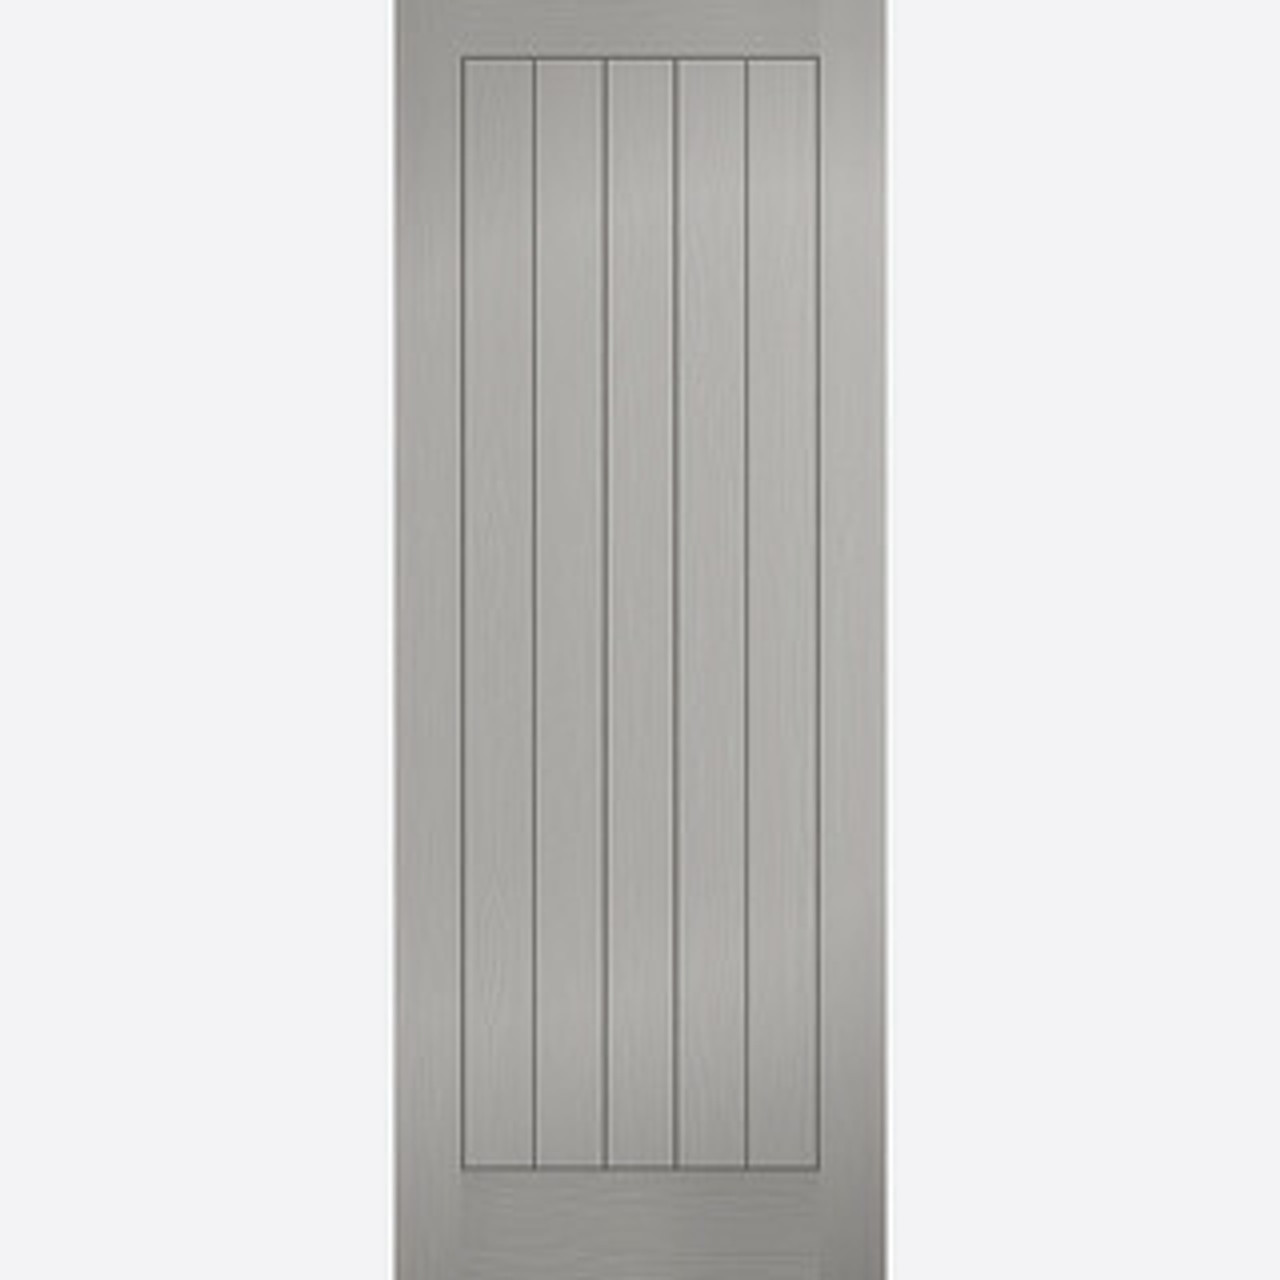 LPD Grey Vertical 5 Panel Range